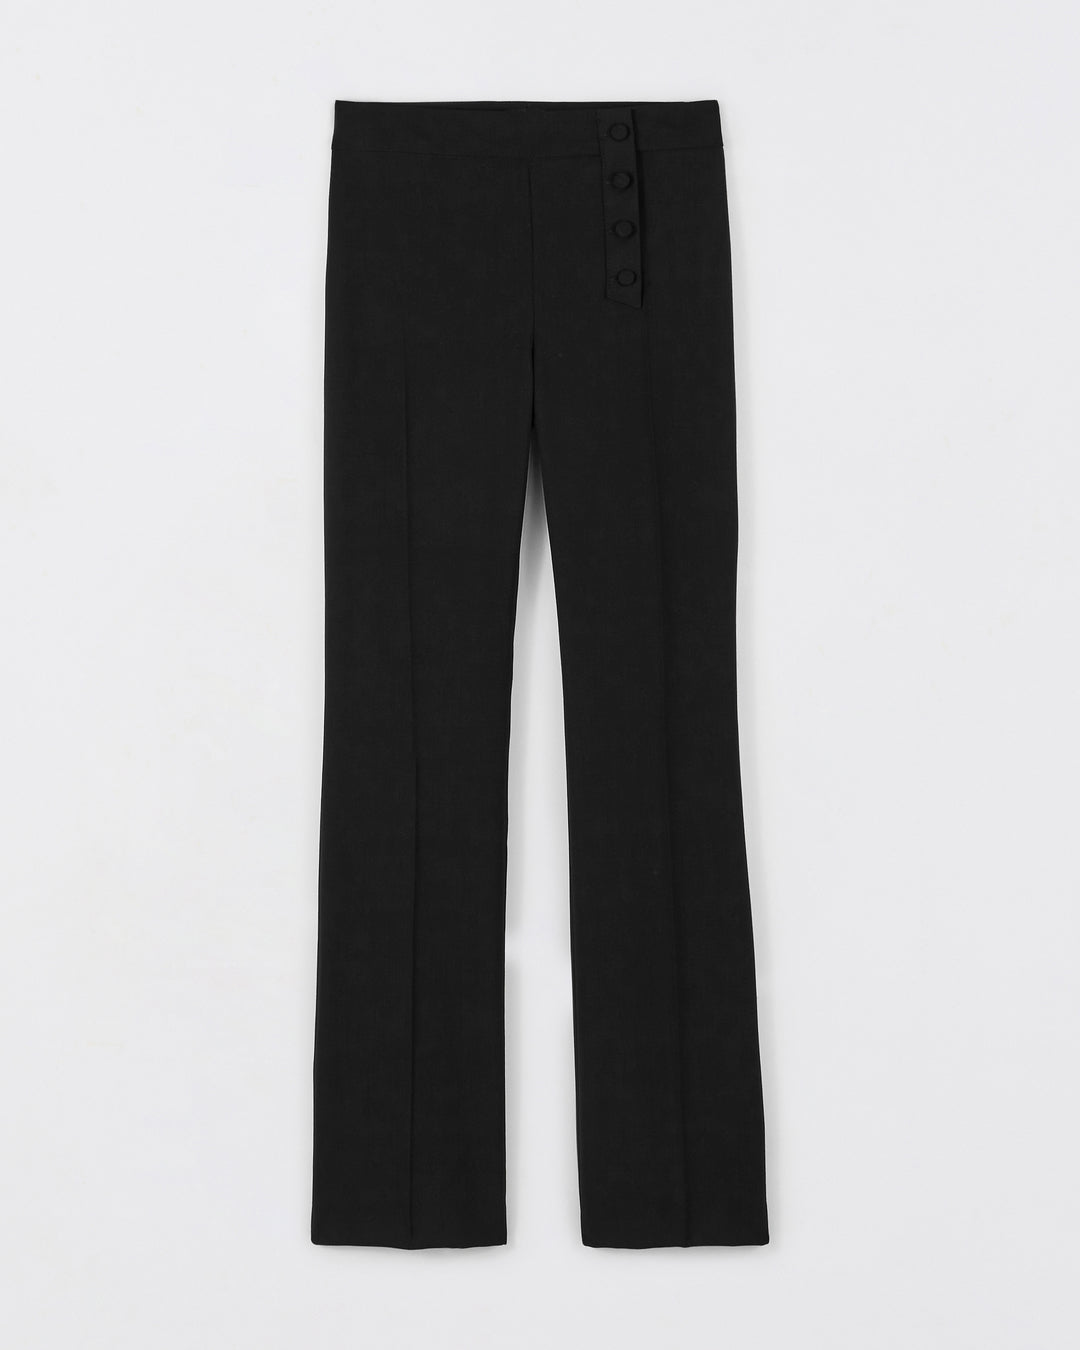 Pantalon-tailleur-noir-Taille-haute-Coupe-flair-évasée-aux-chevilles-Décoration-boutons-recouverts-asymétrique-Fermeture-zip-côté-17H10-tailleurs-pour-femme-paris-